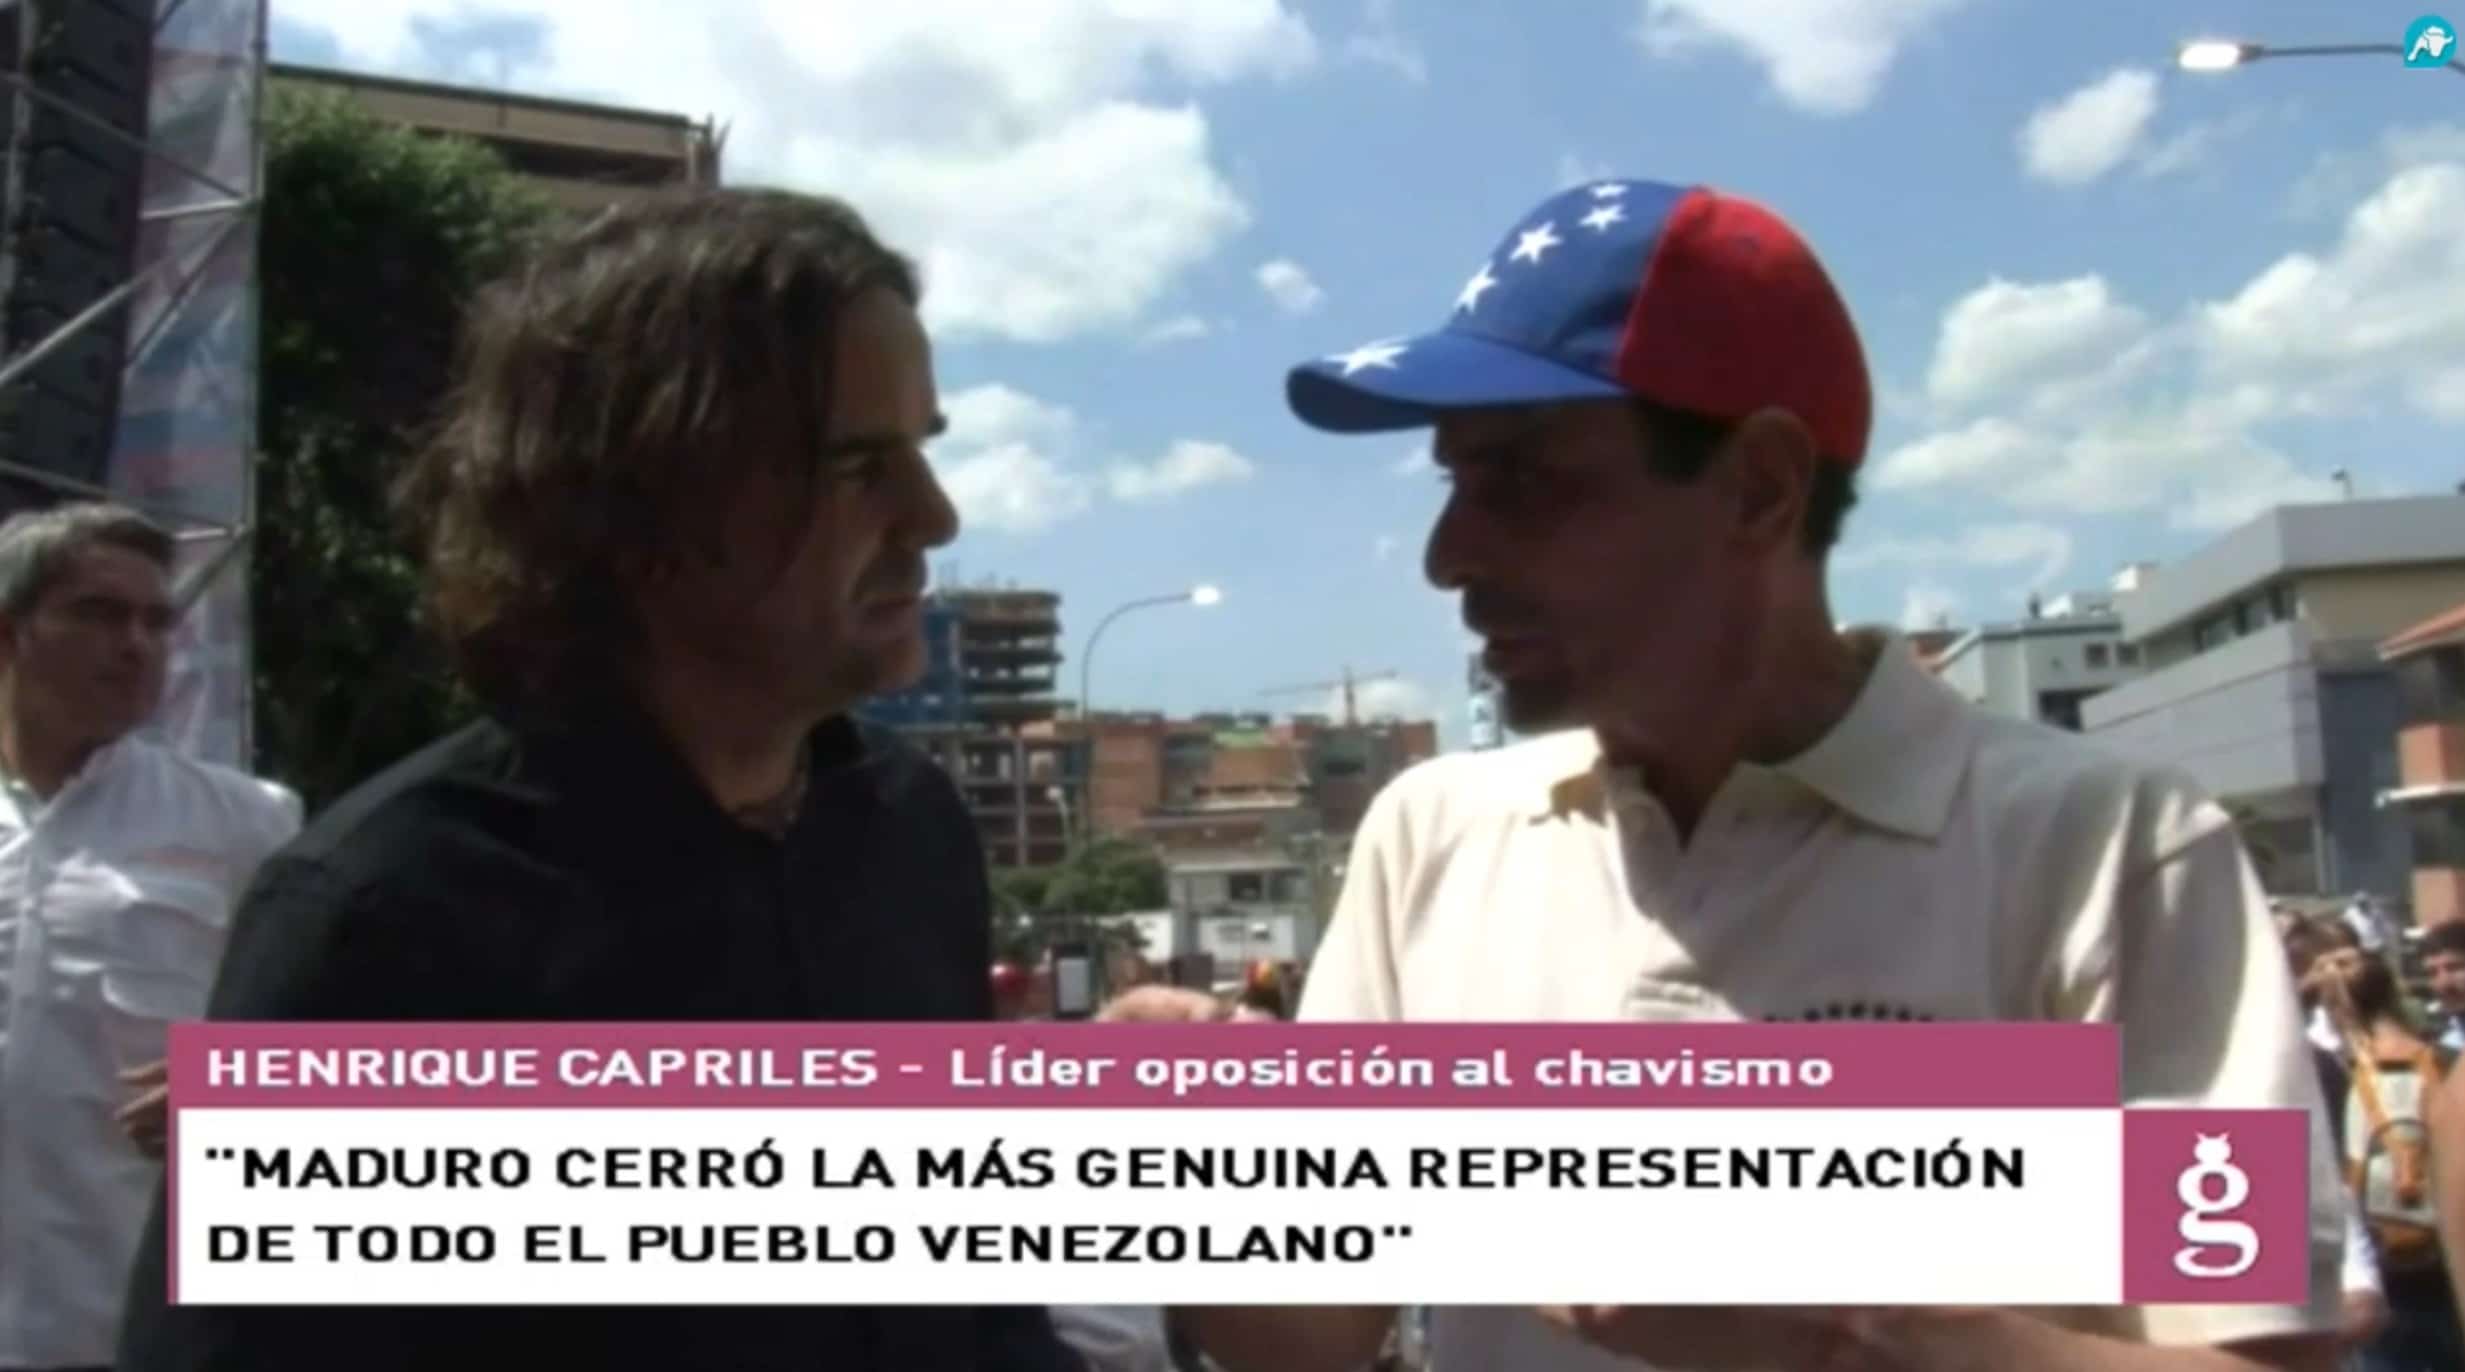 Cake desmonta la mentira del chavismo entrevistando a Henrique Capriles en Venezuela